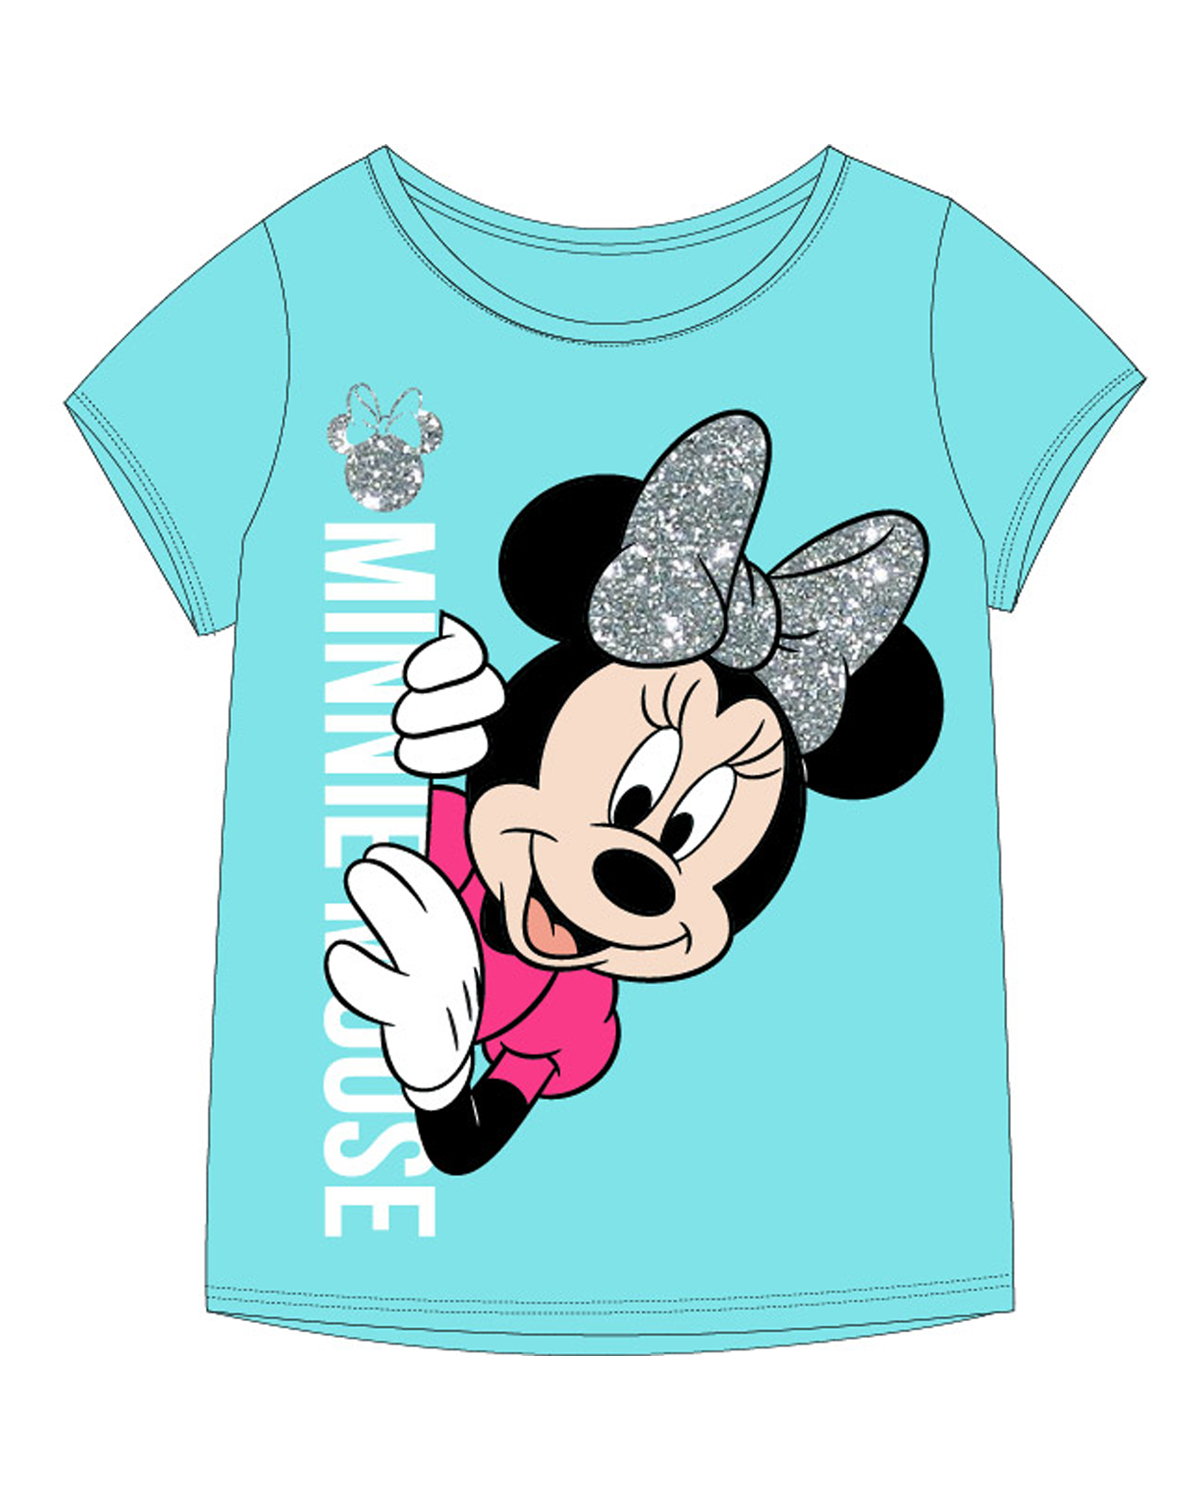 Minnie Mouse - licence Dívčí tričko - Minnie Mouse 52029490KOM, světle modrá Barva: Modrá světle, Velikost: 104